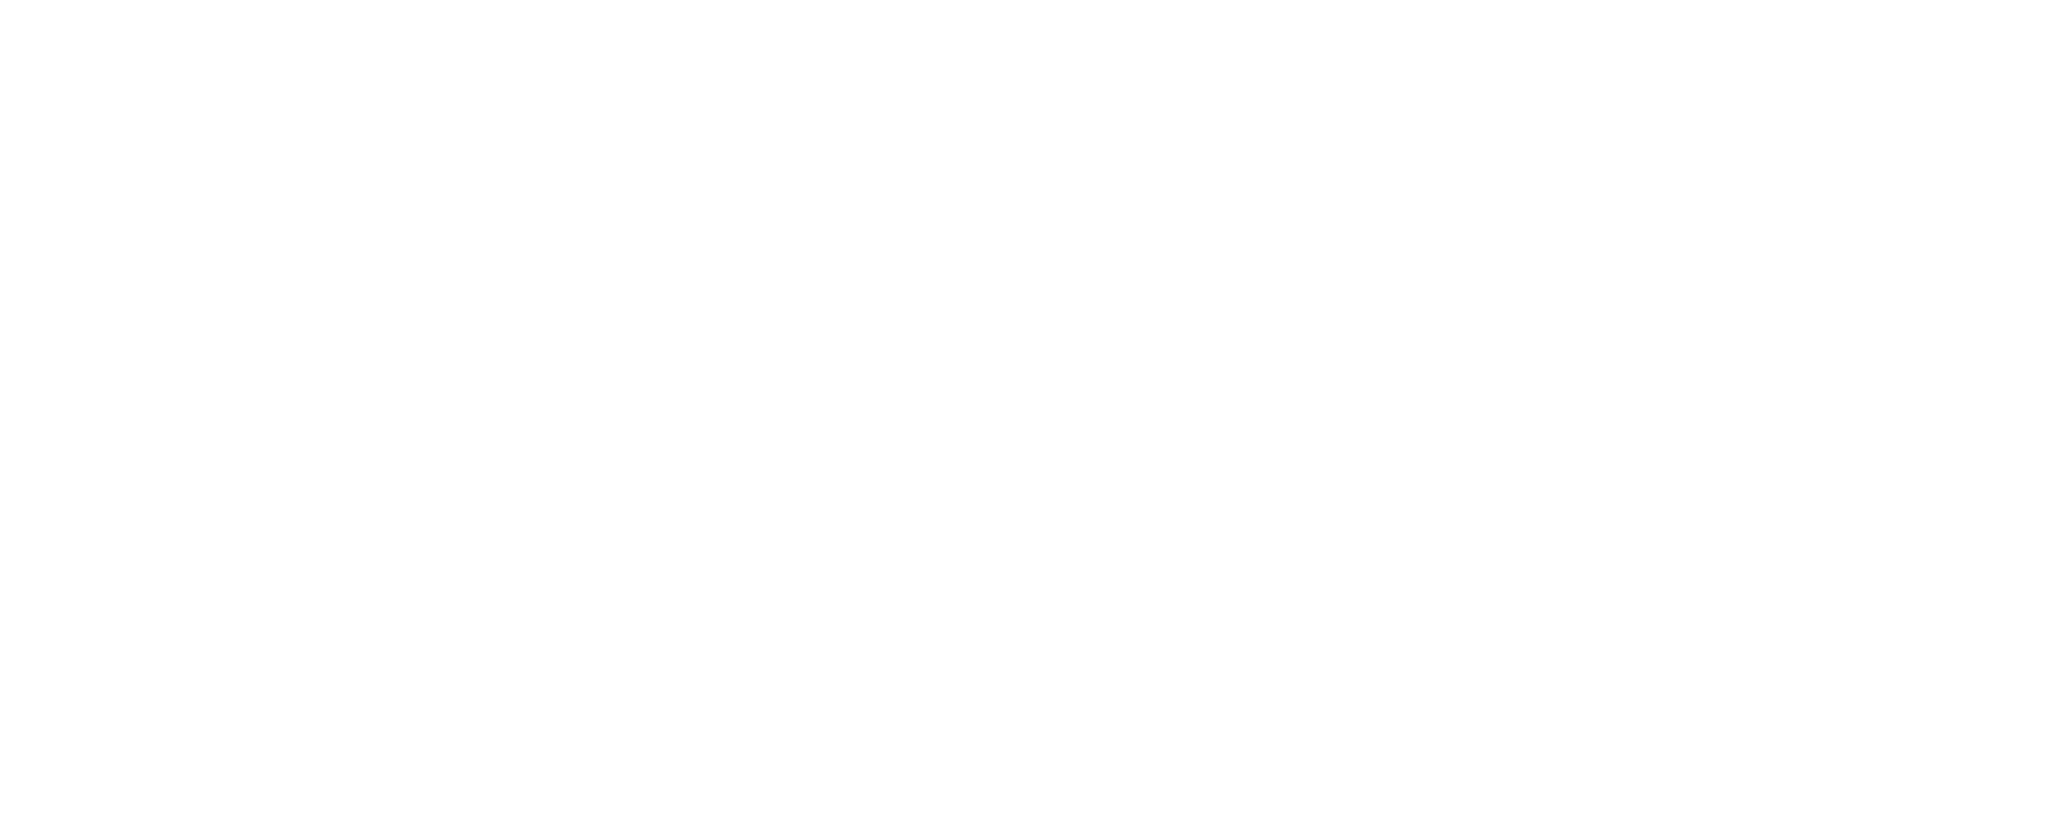 reparacion-de-computadoras-logotipo-blanco